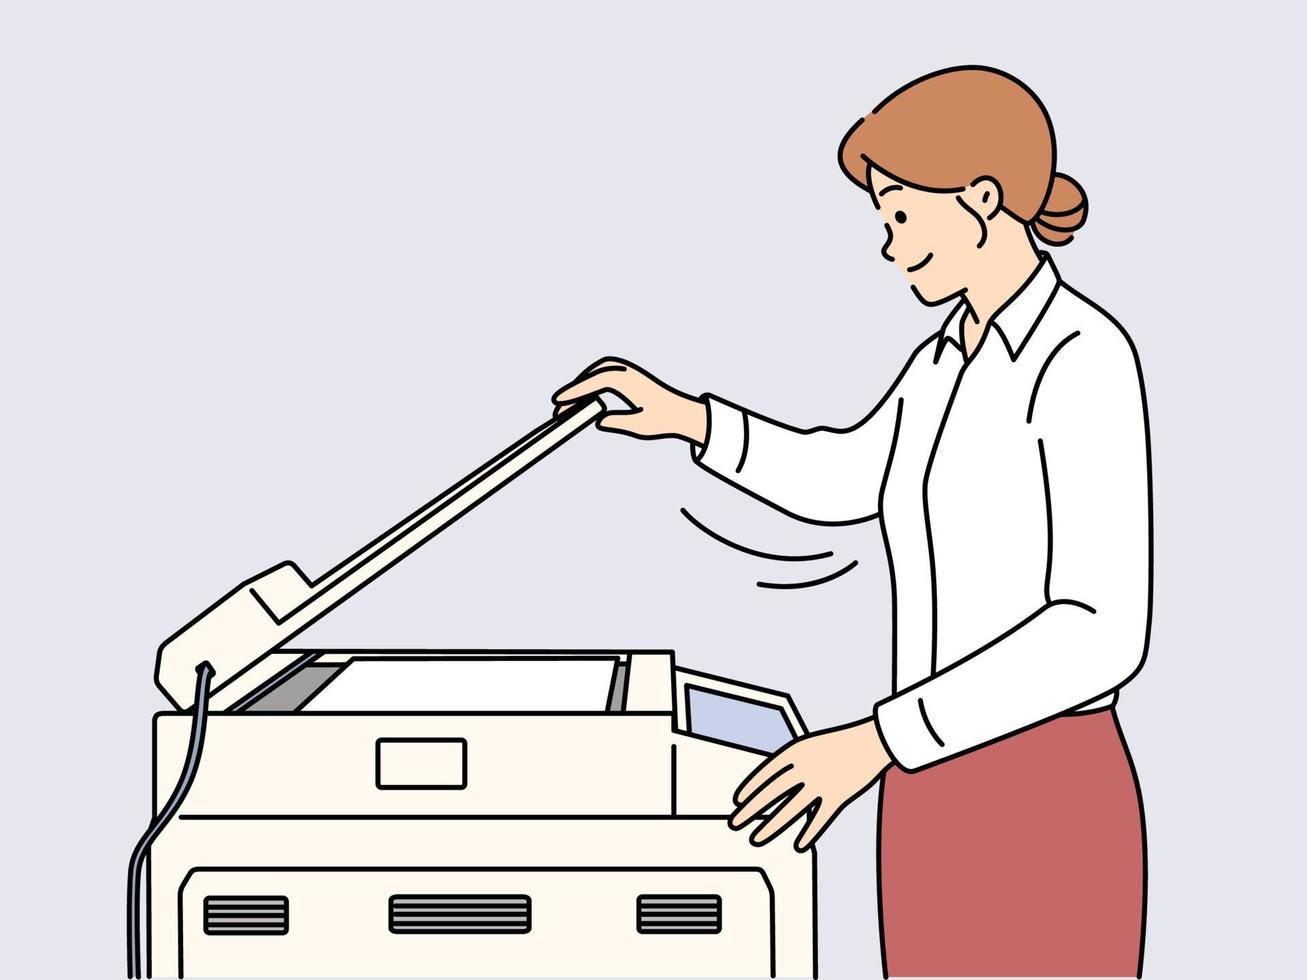 Jeune femme d'affaires fabrication document copie sur machine dans bureau. souriant femelle employé travail sur imprimante ou photocopie appareil. vecteur illustration.